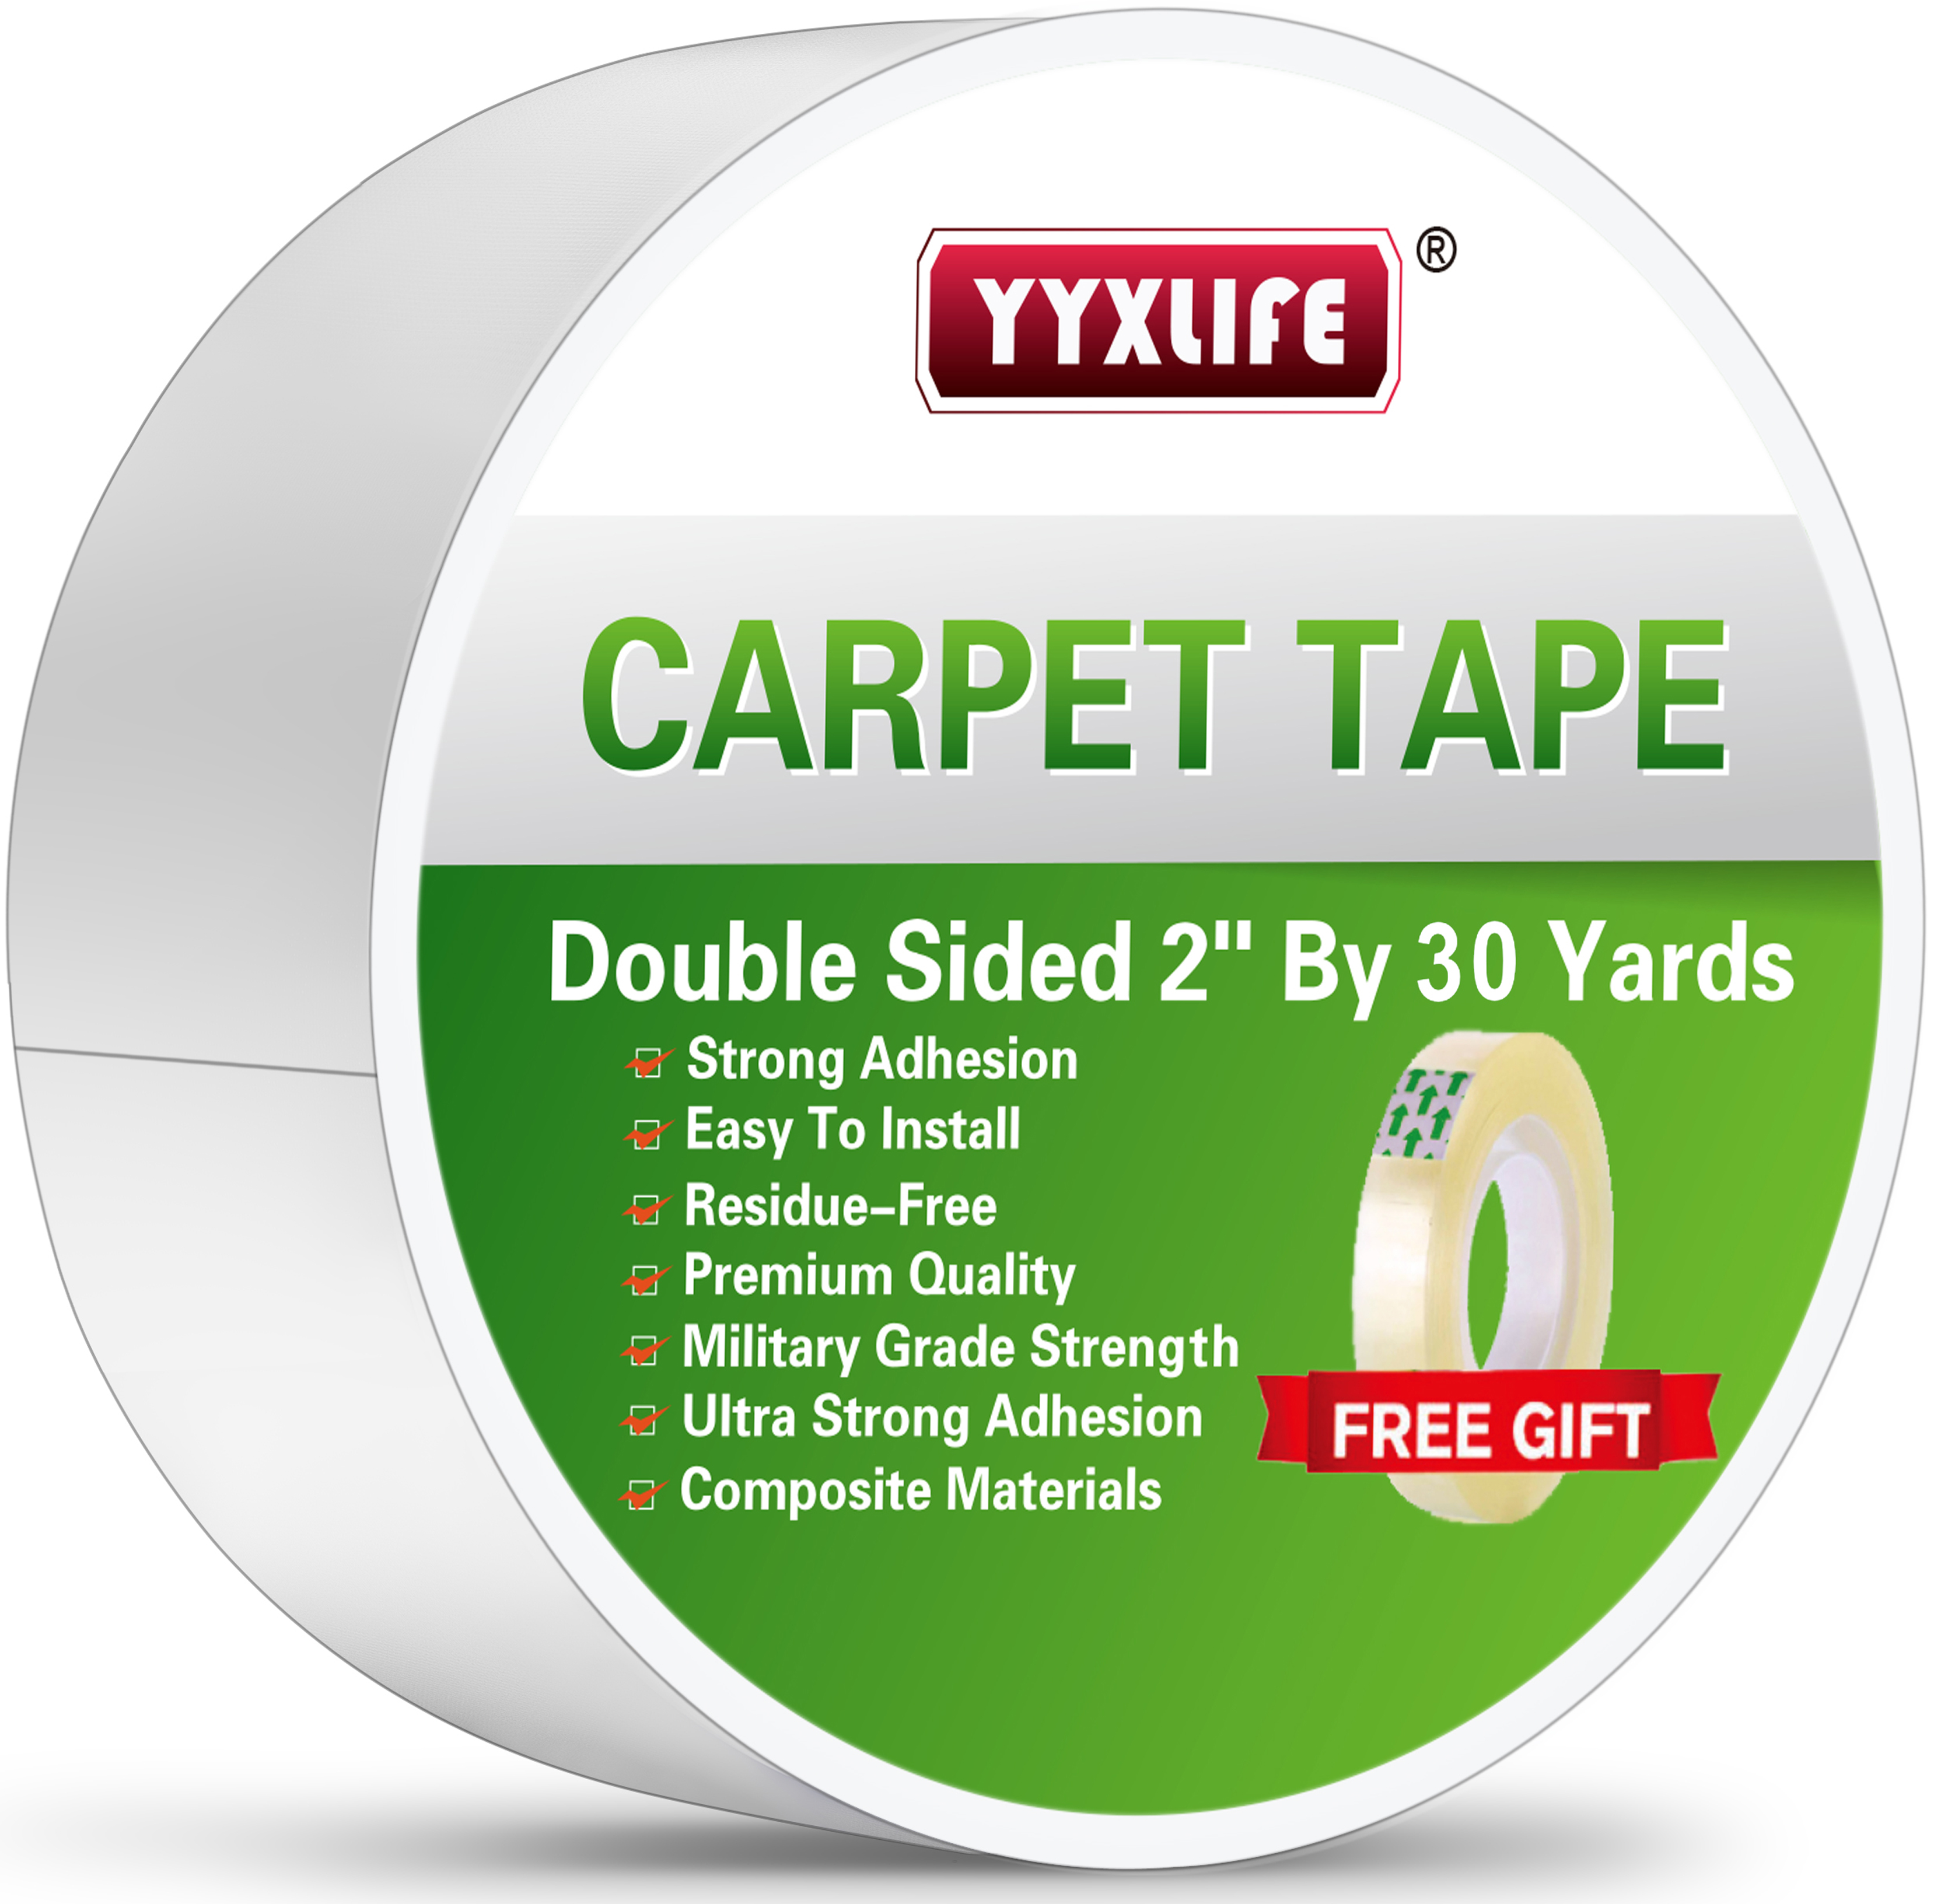 yyxlife carpet tape